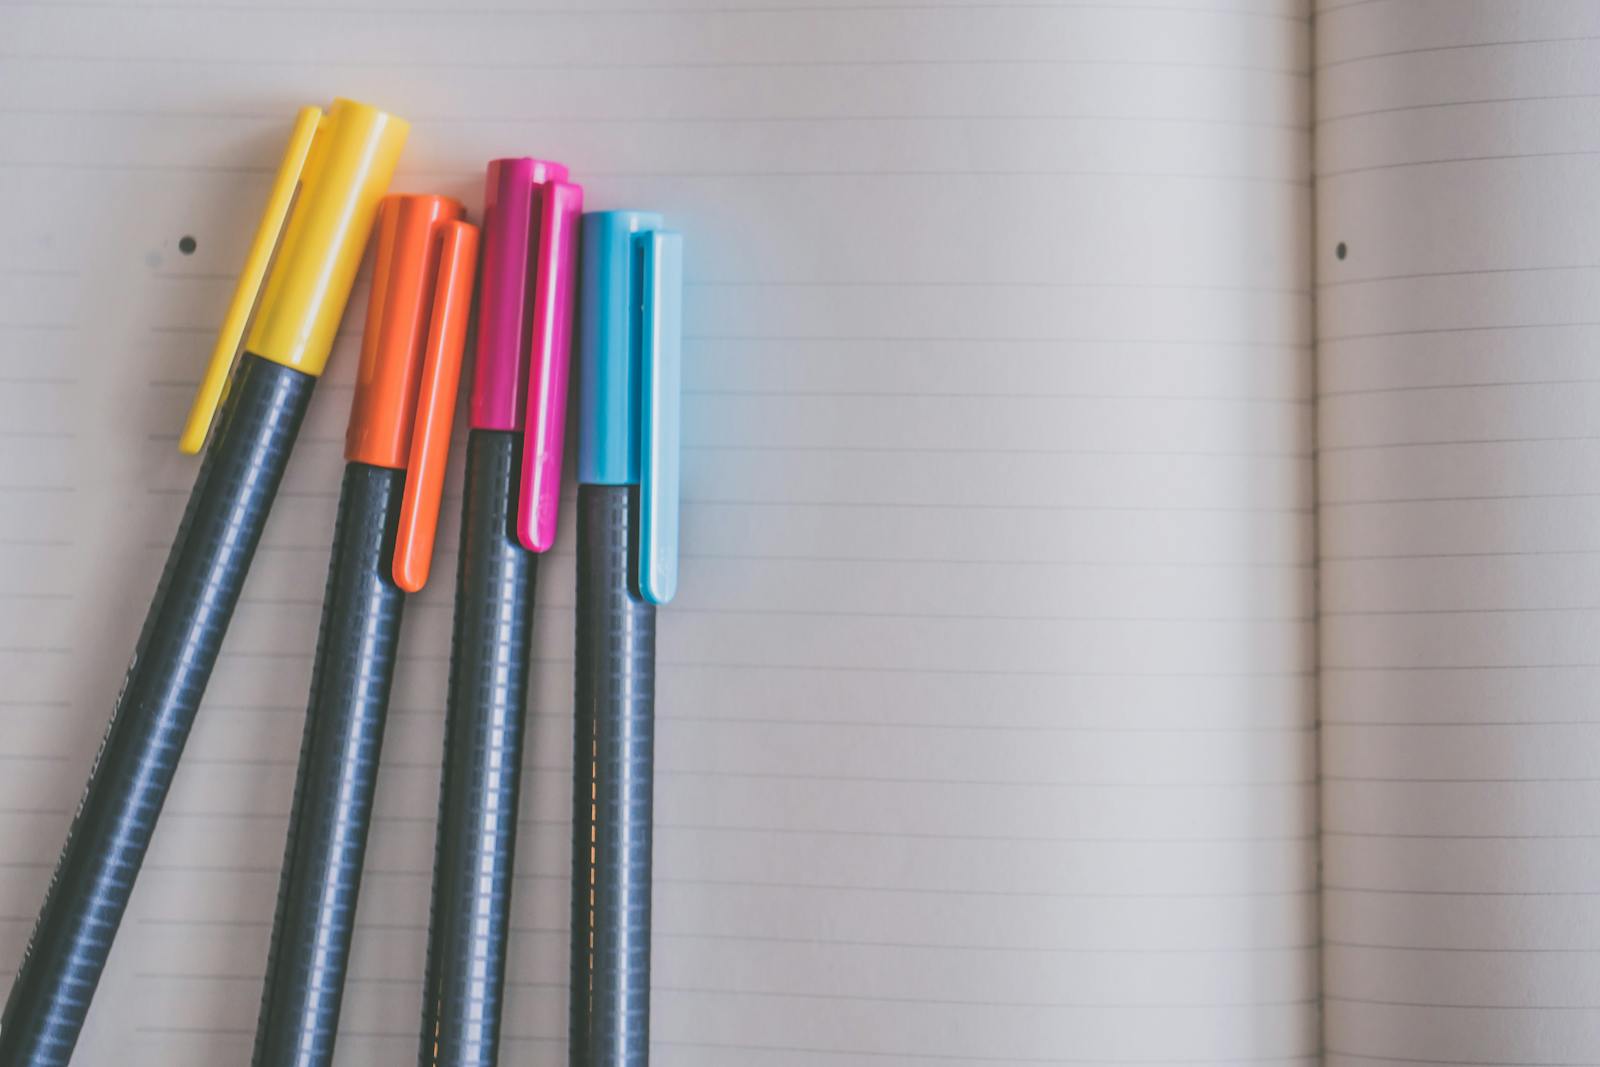 两支大铅笔和橡胶擦 库存图片. 图片 包括有 橡胶, 蓝色, 材料, 教育, 铅笔, 橡皮擦, 空白, 教学 - 167721363